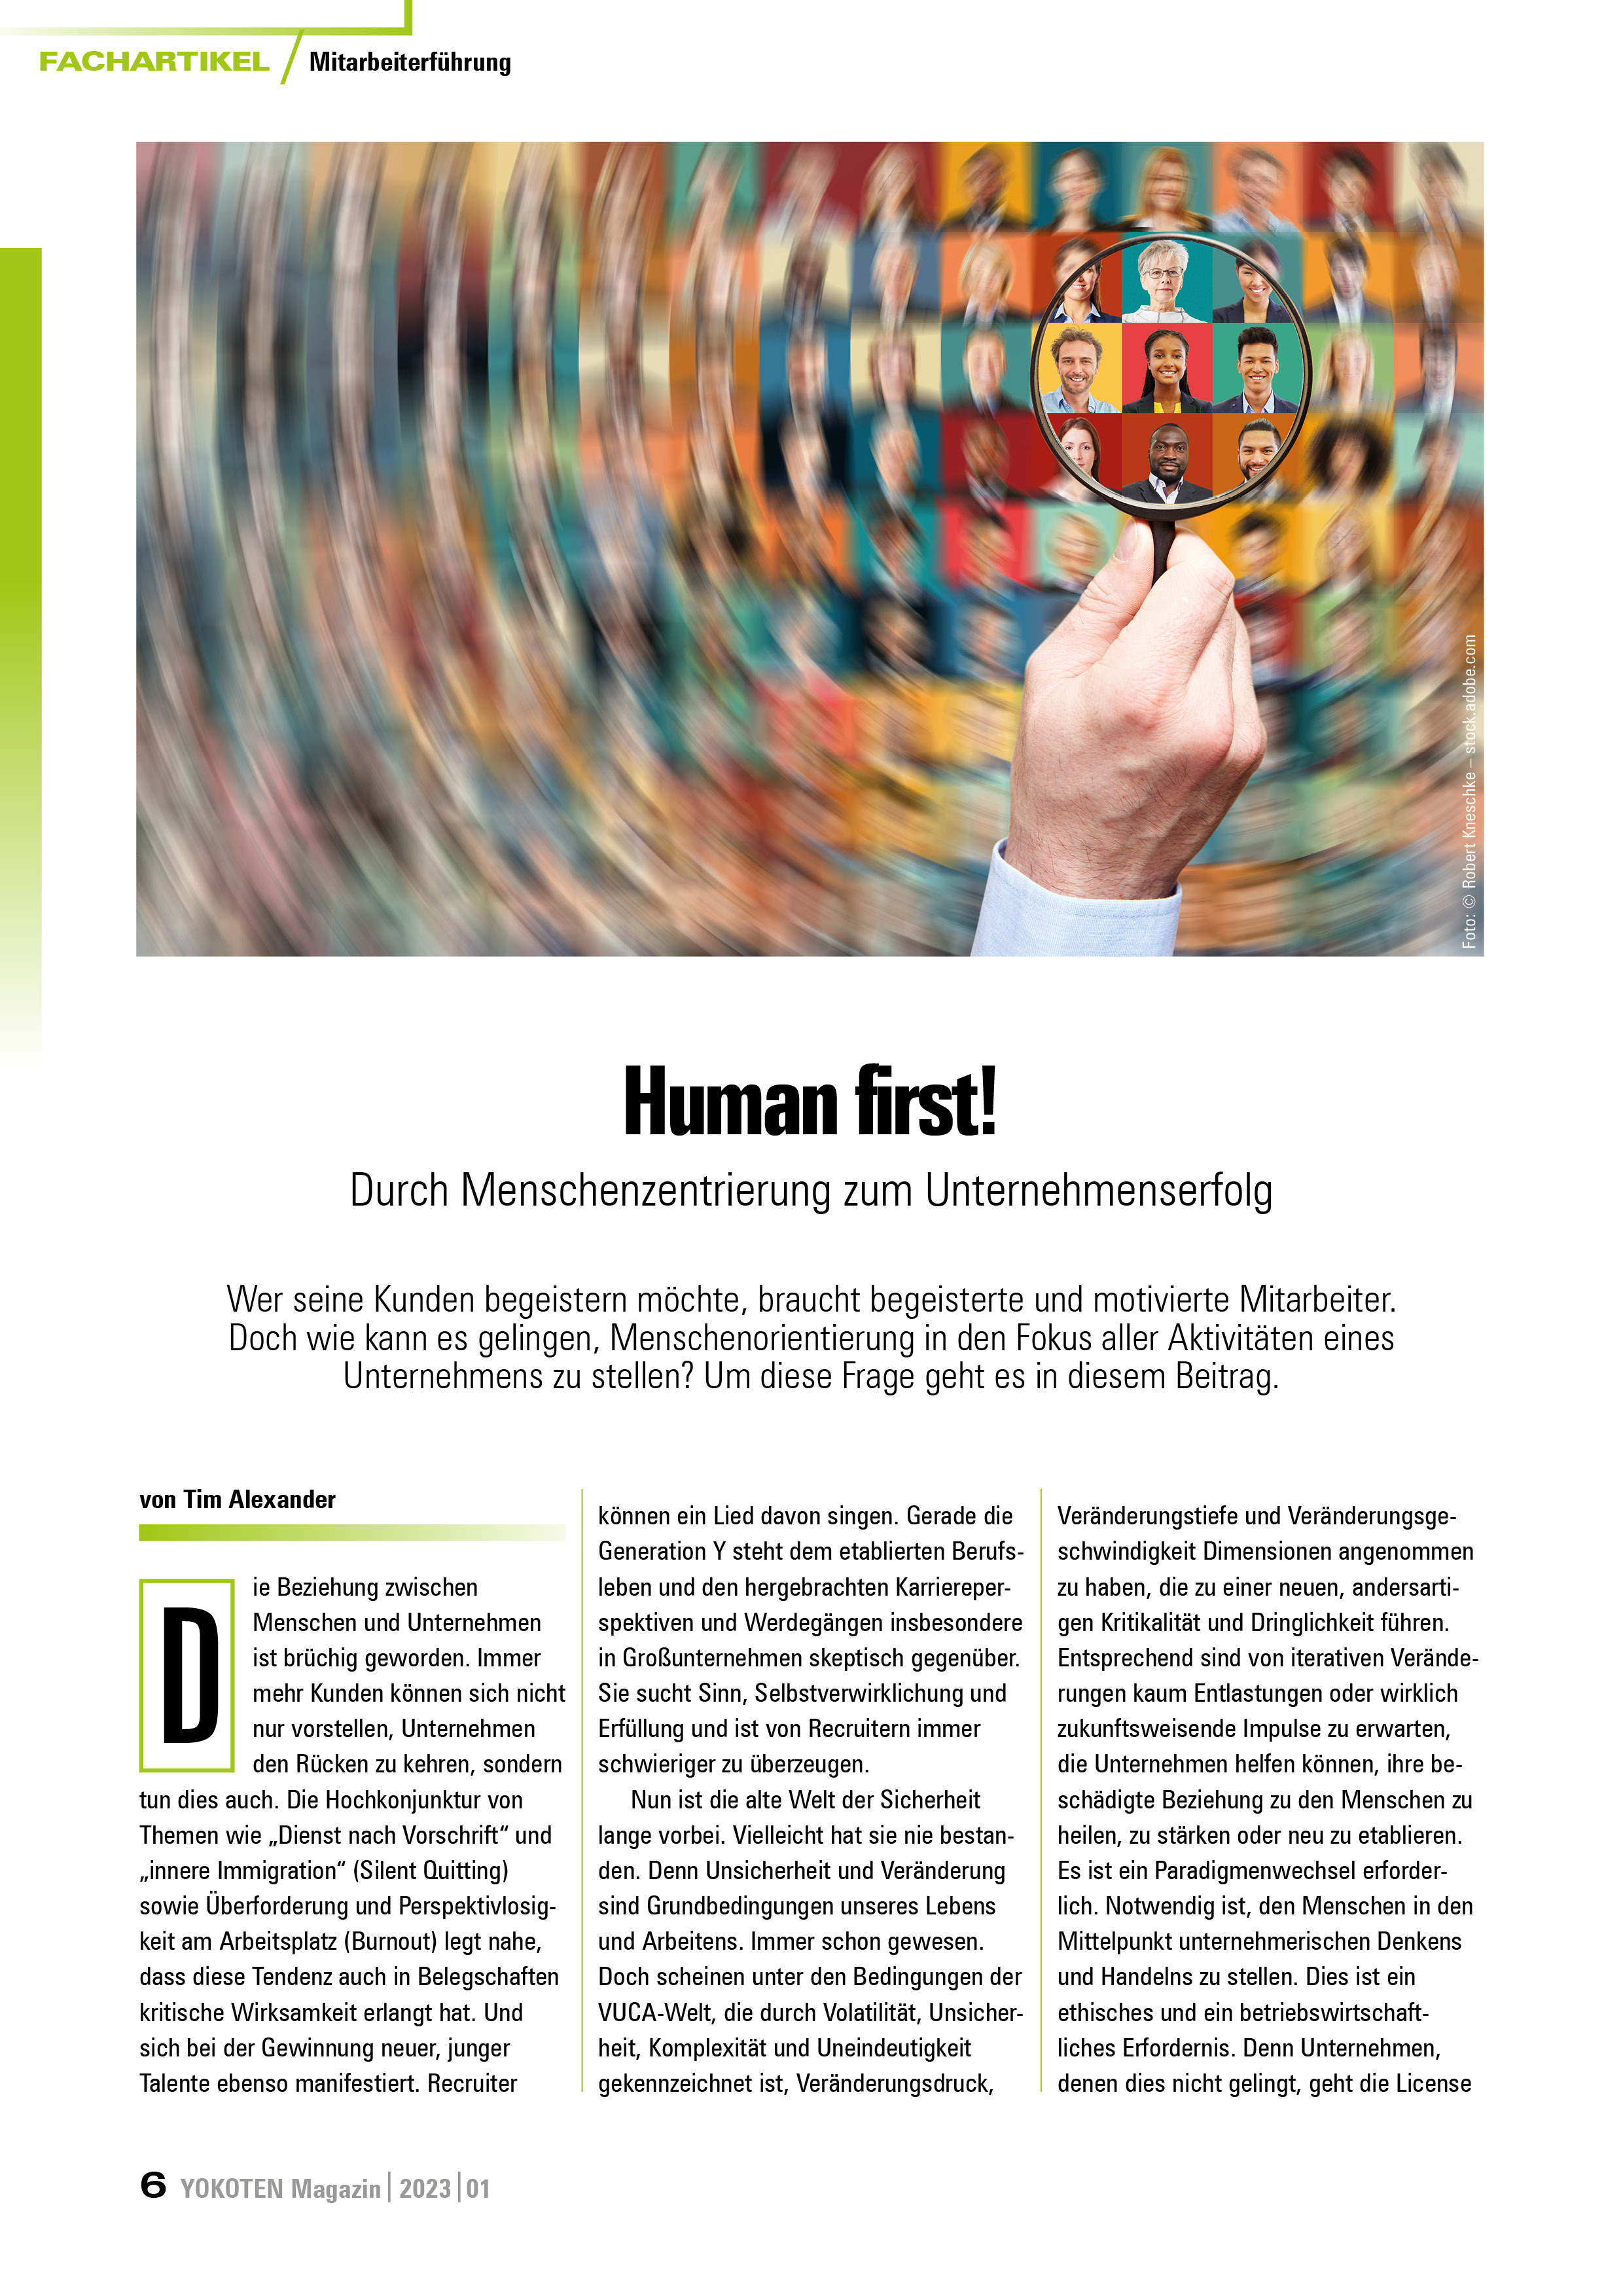 YOKOTEN-Artikel: Human first!